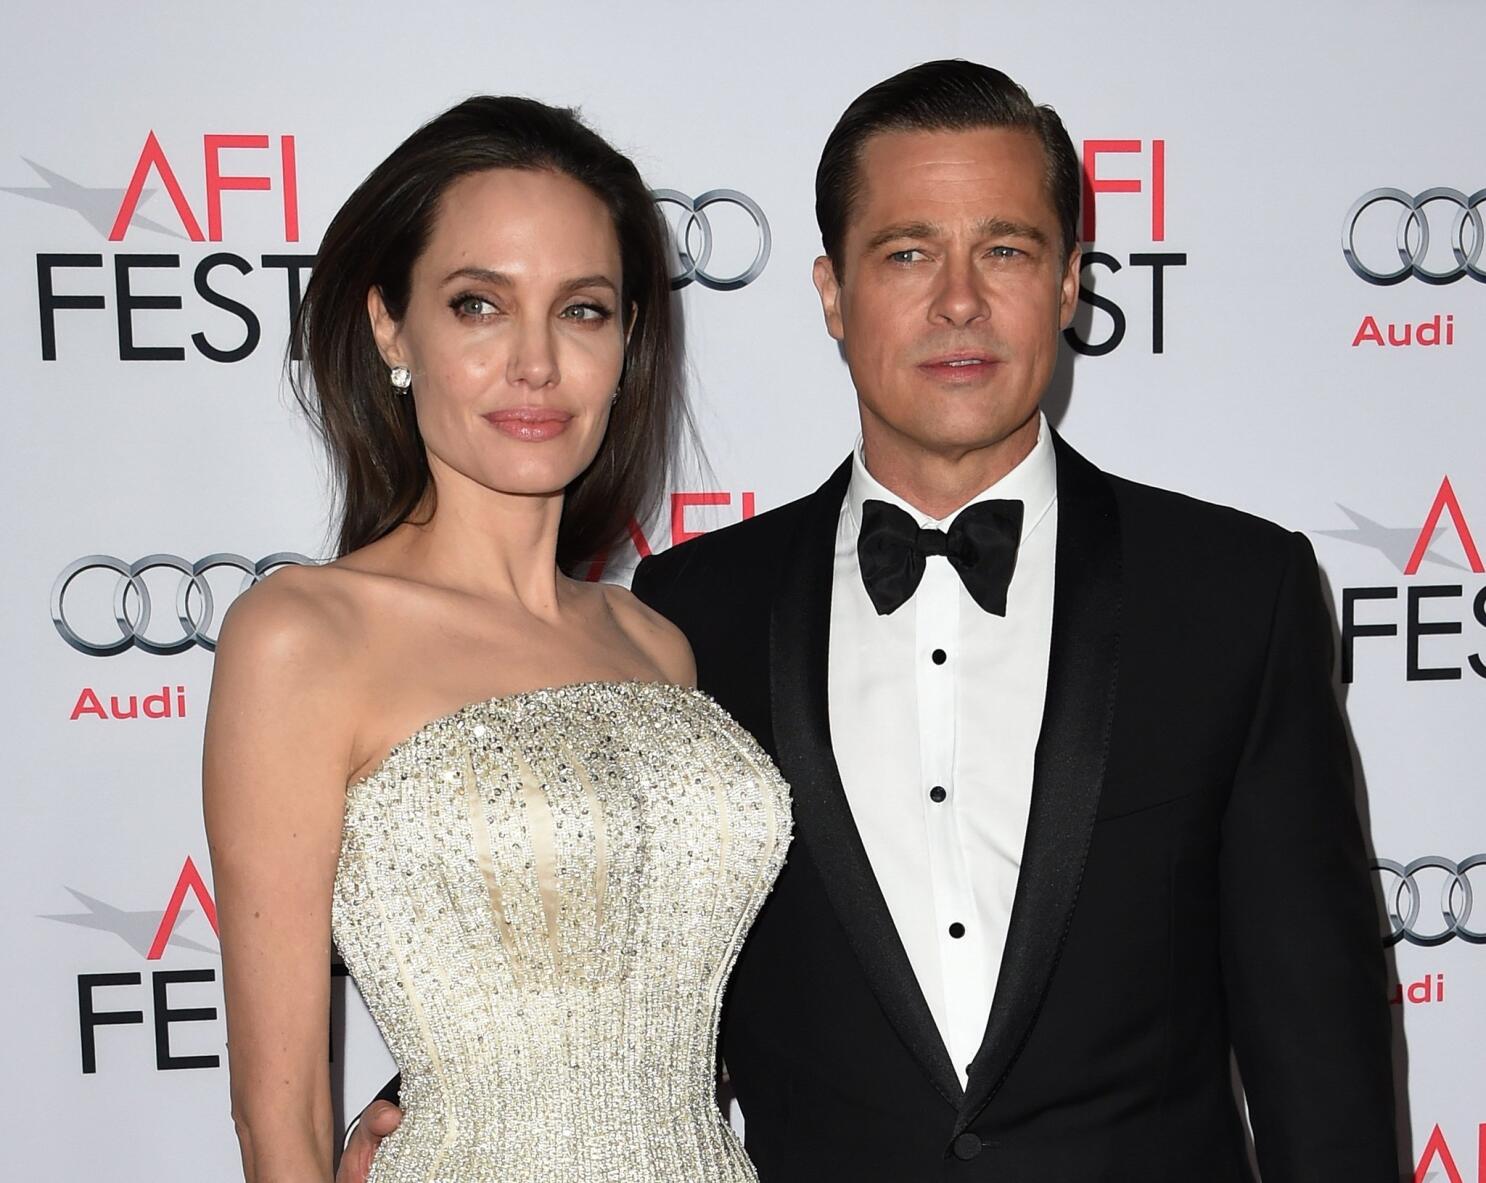 What Are Angelina Jolie & Brad Pitt's Children Up To?